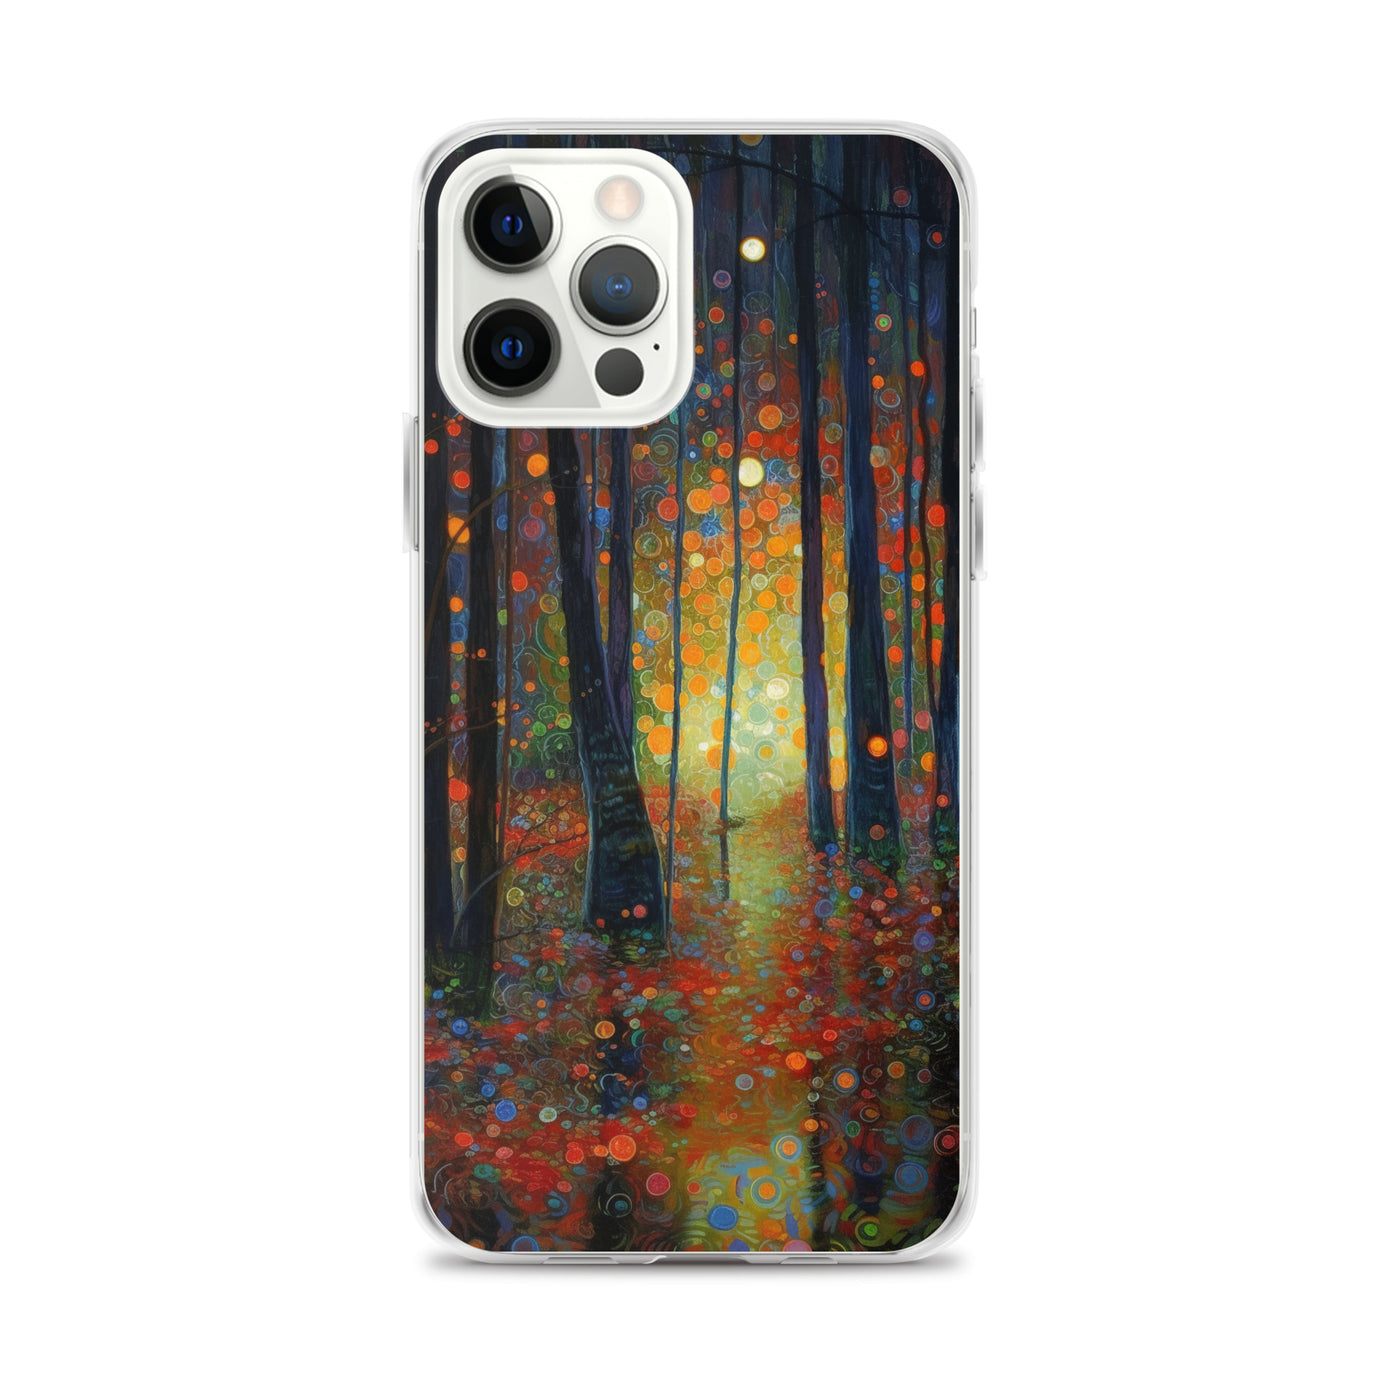 Wald voller Bäume - Herbstliche Stimmung - Malerei - iPhone Schutzhülle (durchsichtig) camping xxx iPhone 12 Pro Max